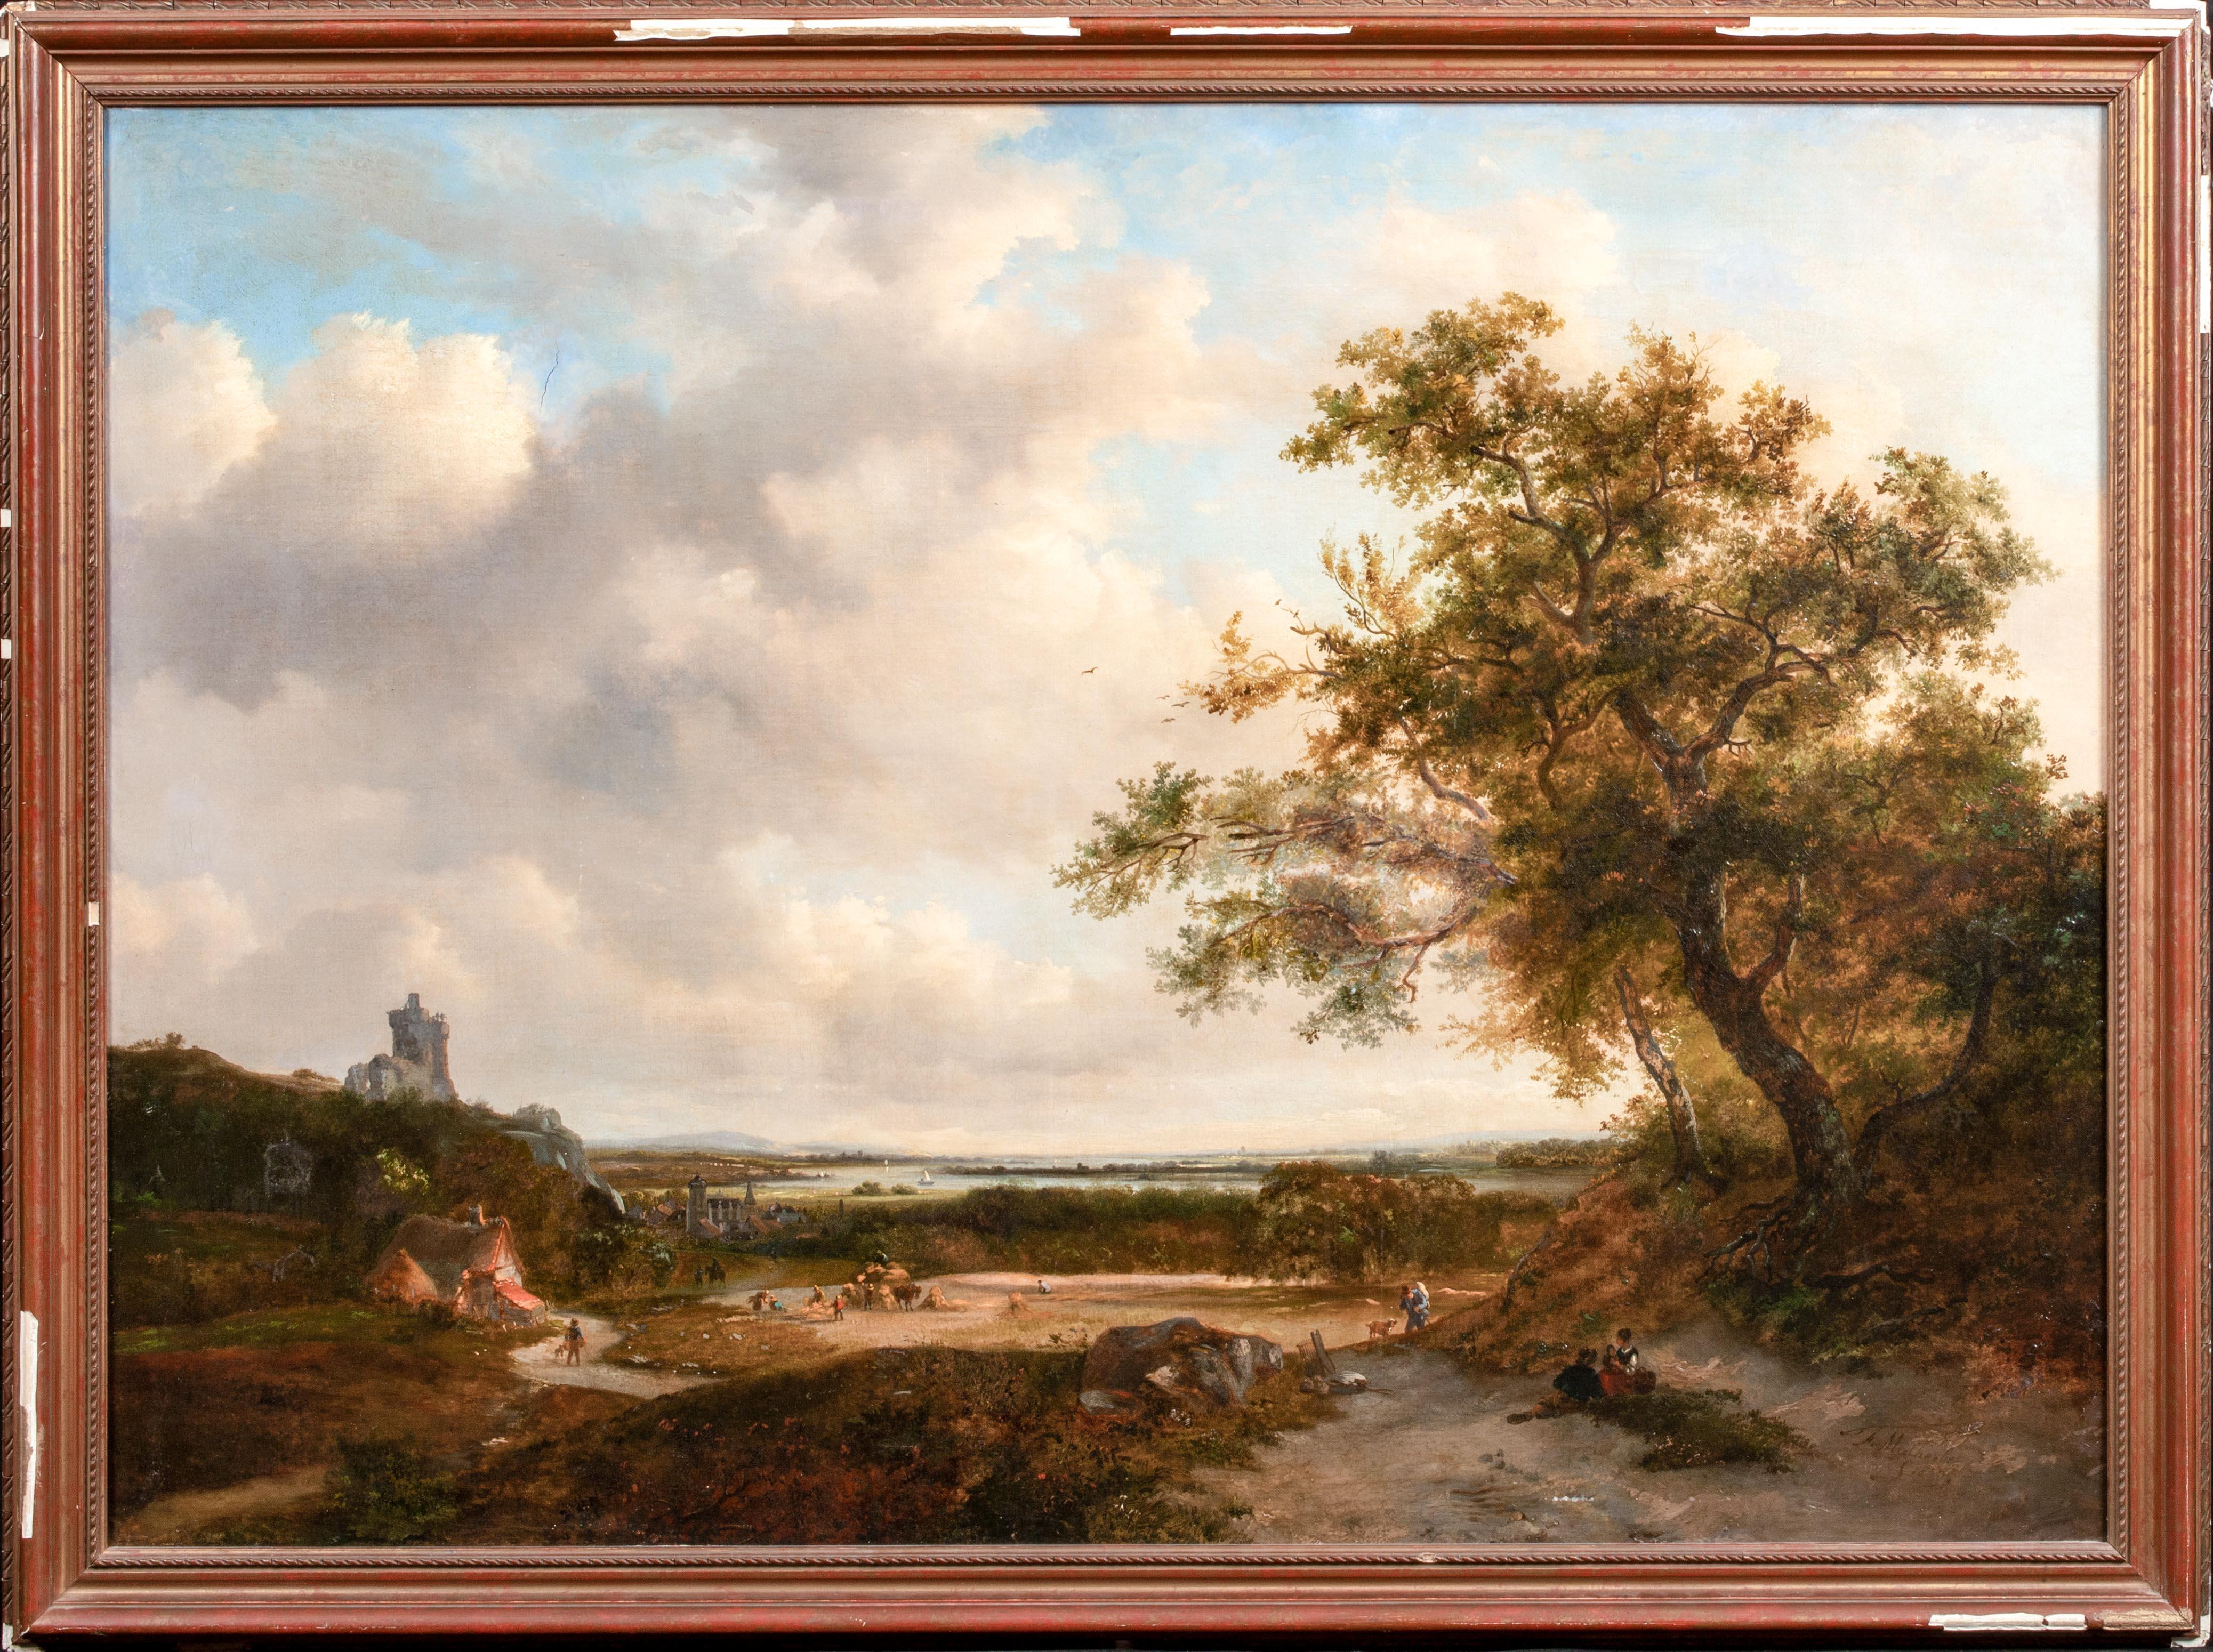 Figuren In A Landscape, River Rhine In The Distance, datiert 1869, Adolphe Malherbe – Painting von Unknown